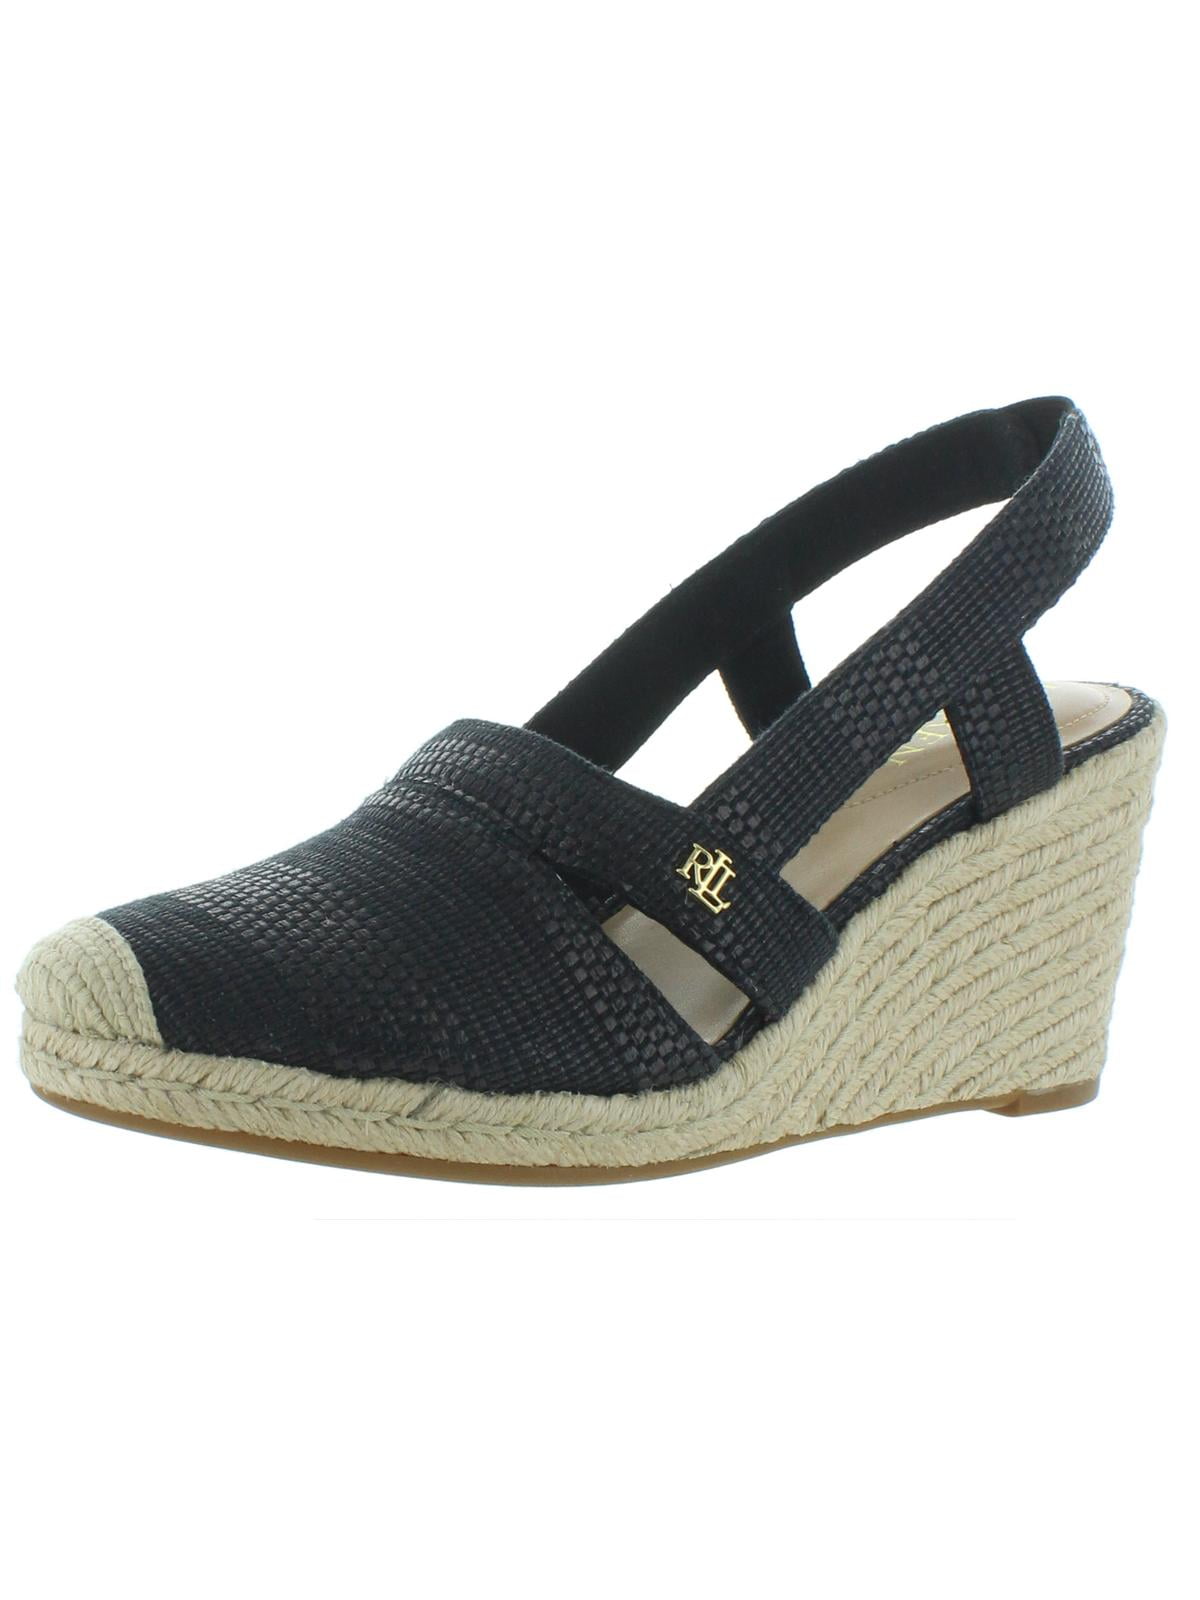 Buy > ralph lauren strappy sandals > in stock